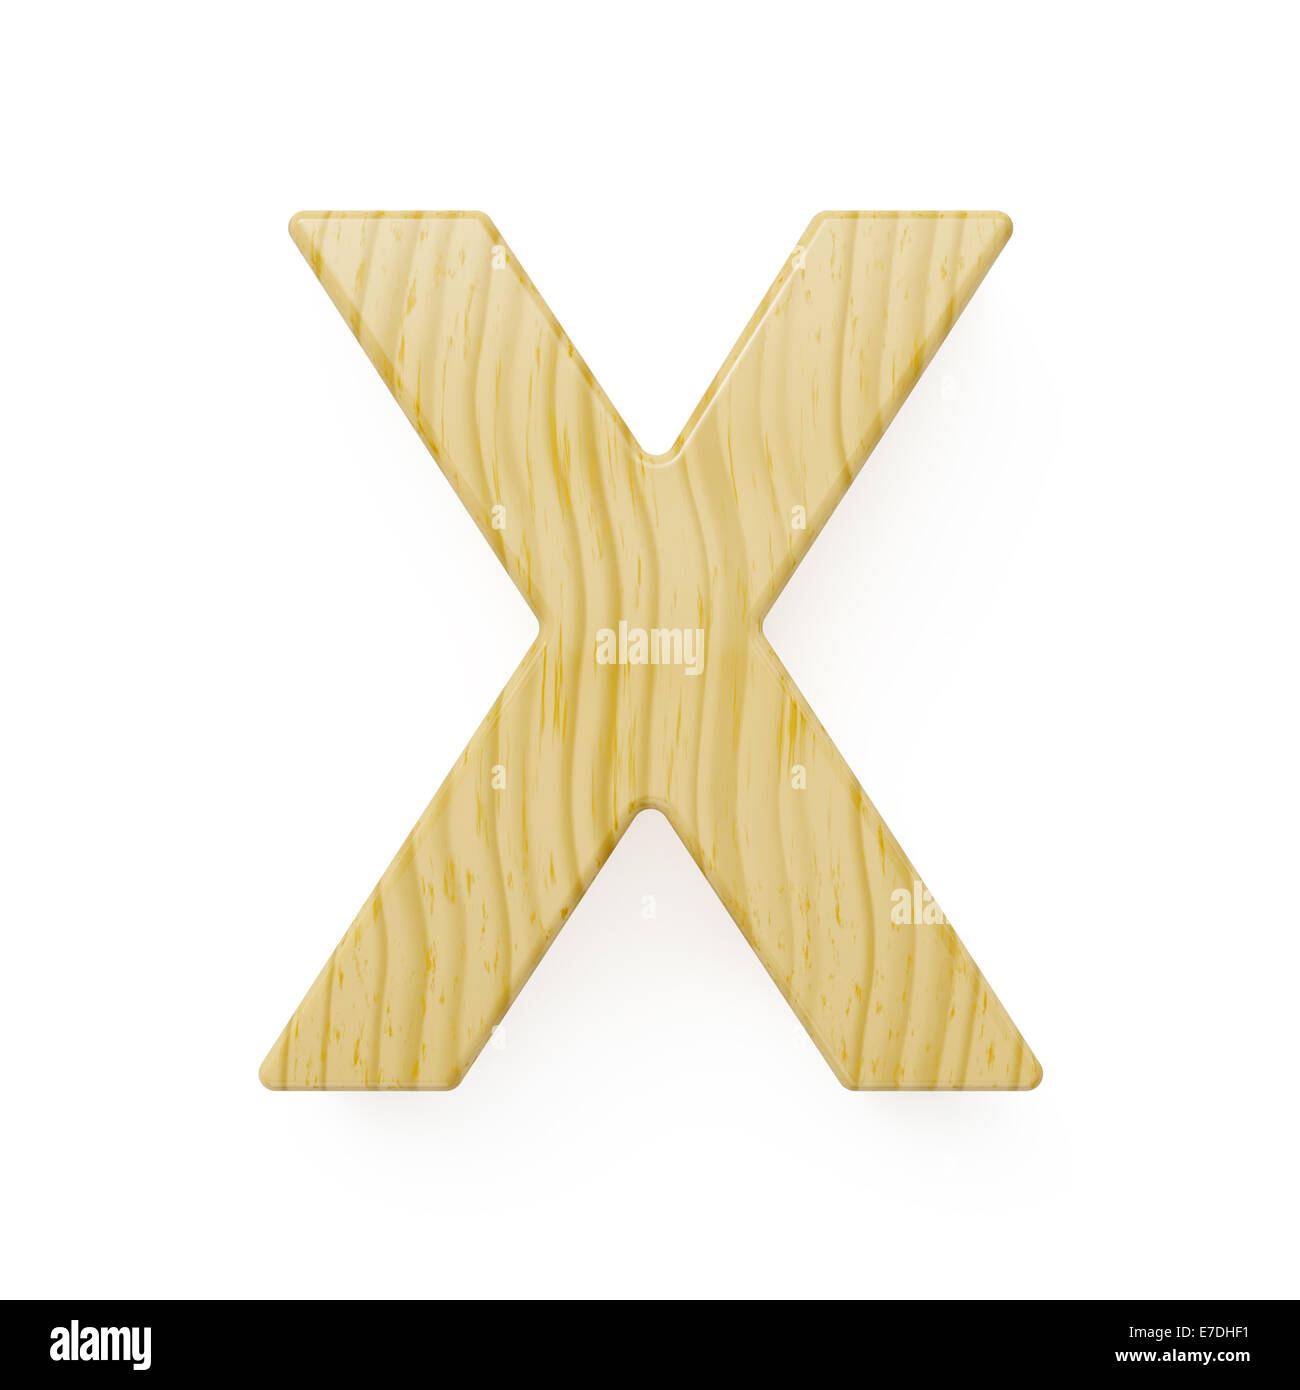 Wood alphabet letter symbol - X. Isolated on white background Stock Photo